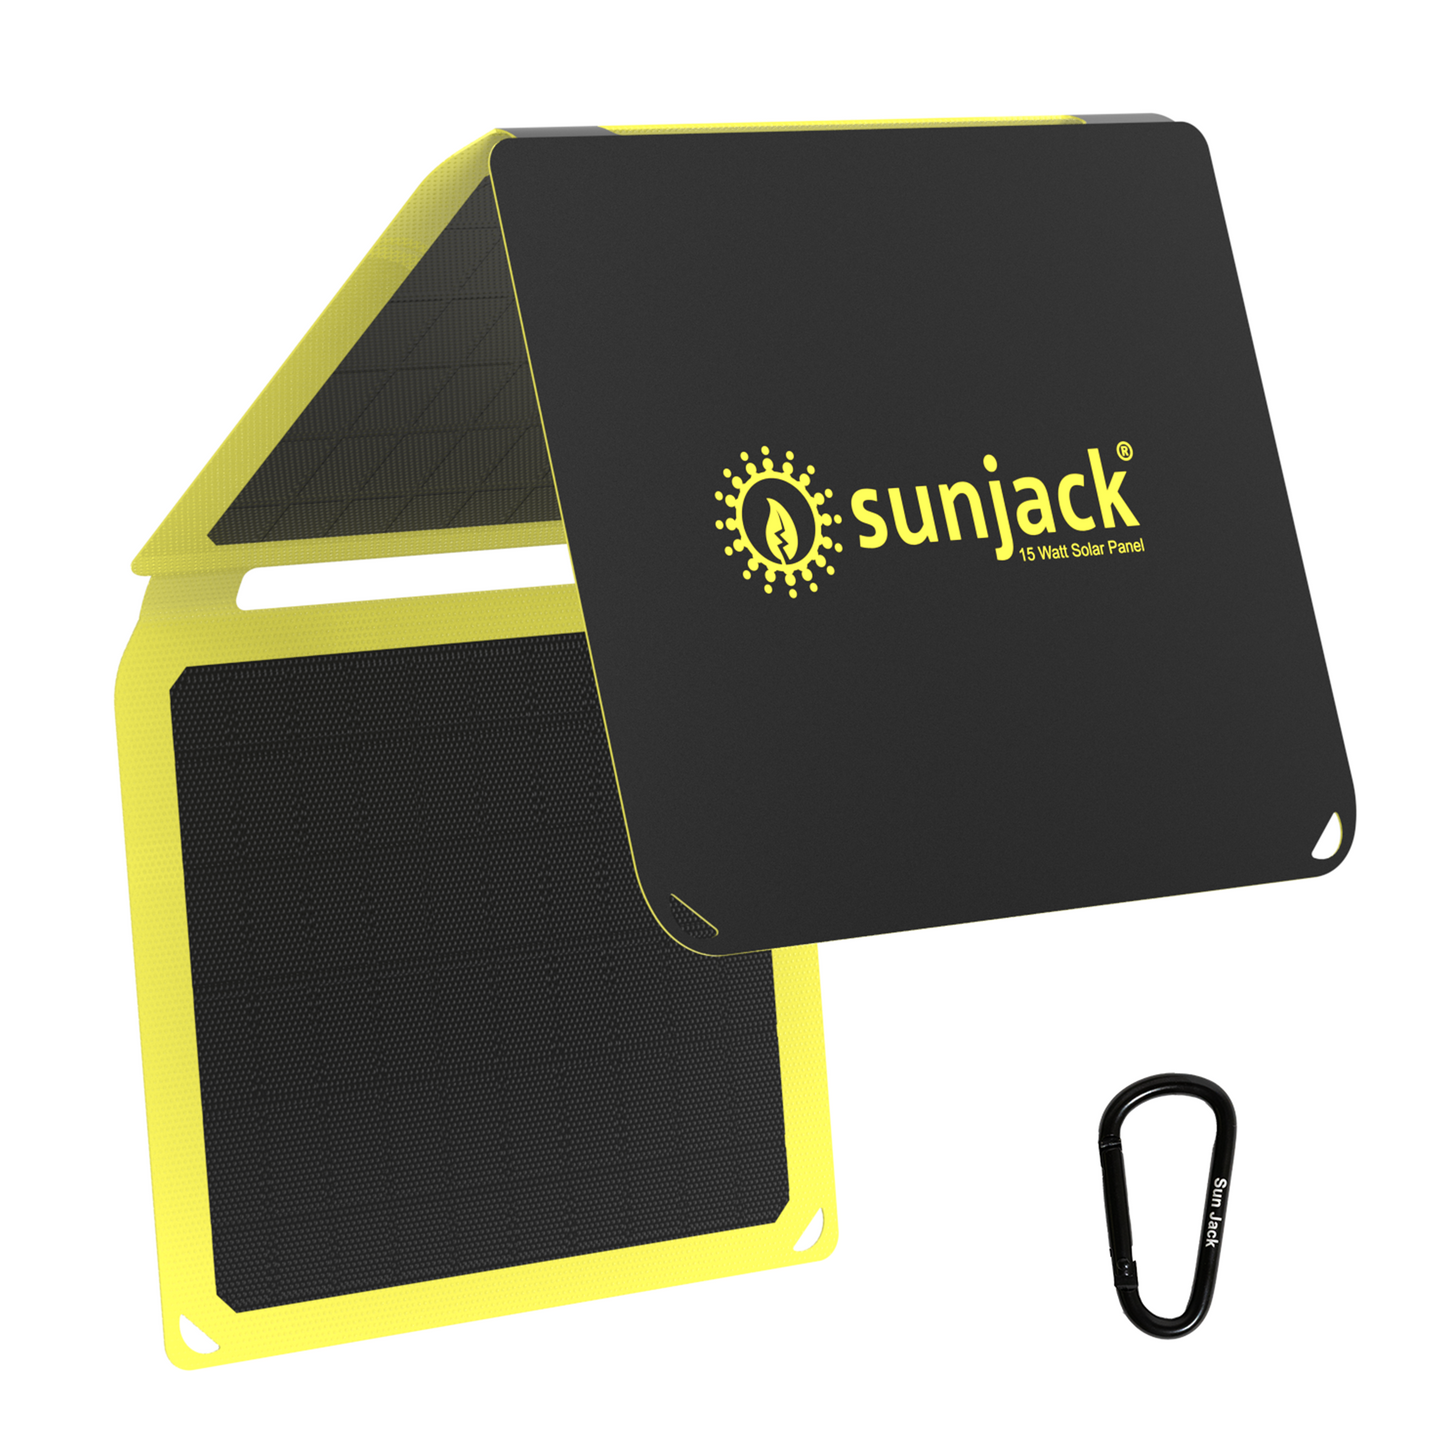 SunJack 15 ワット 折りたたみ式 ETFE 単結晶ソーラー パネル充電器